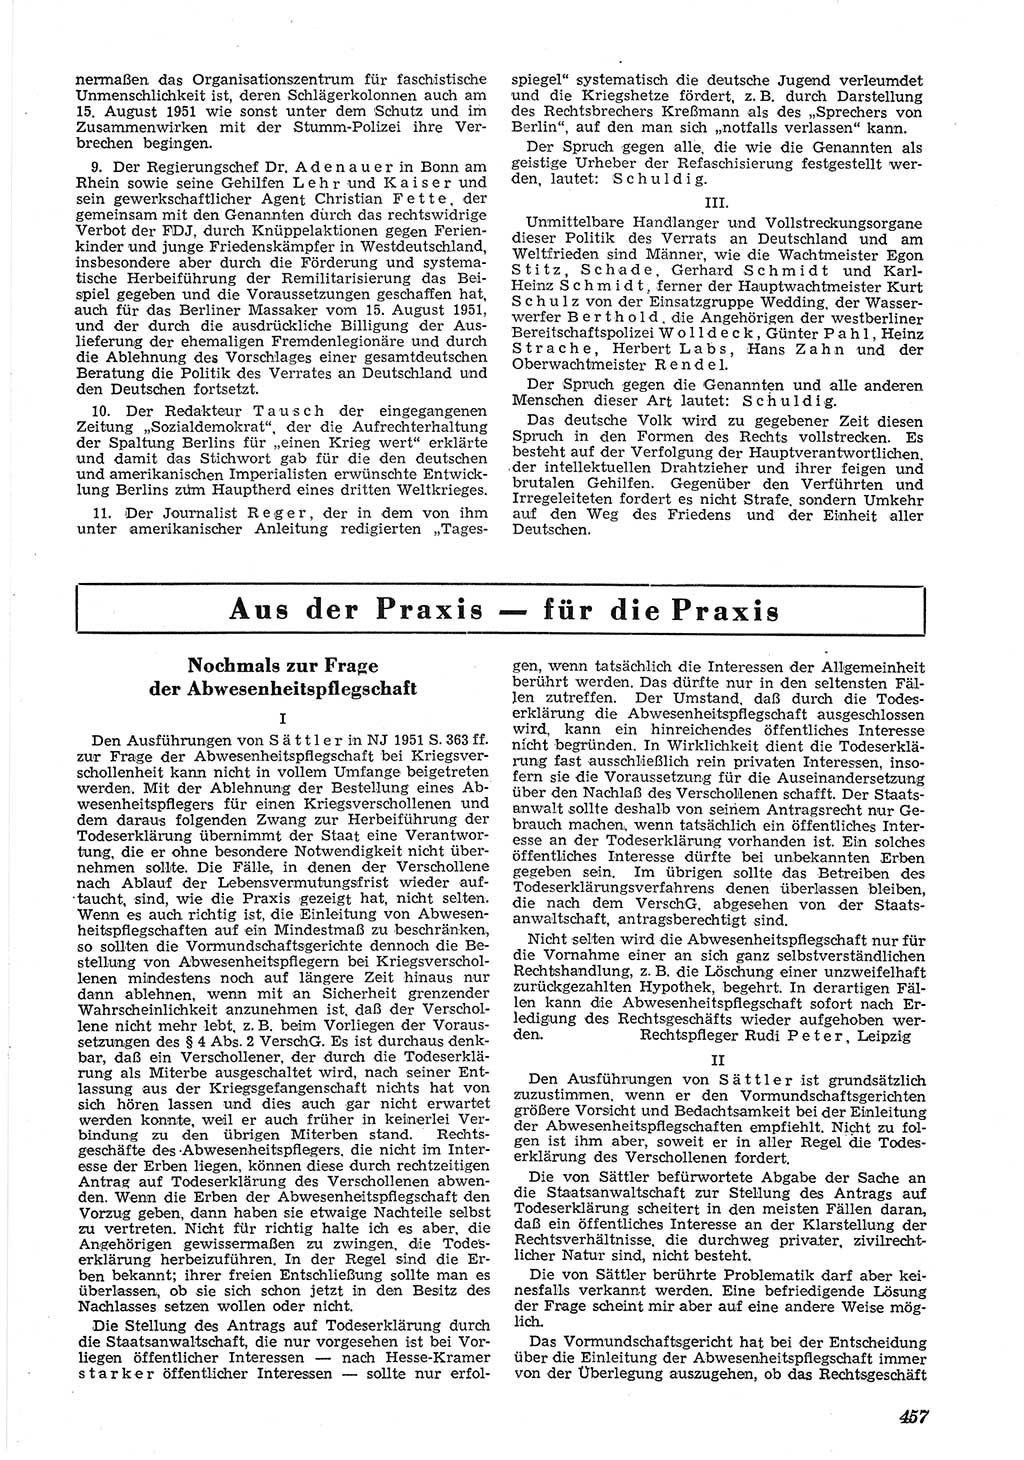 Neue Justiz (NJ), Zeitschrift für Recht und Rechtswissenschaft [Deutsche Demokratische Republik (DDR)], 5. Jahrgang 1951, Seite 457 (NJ DDR 1951, S. 457)